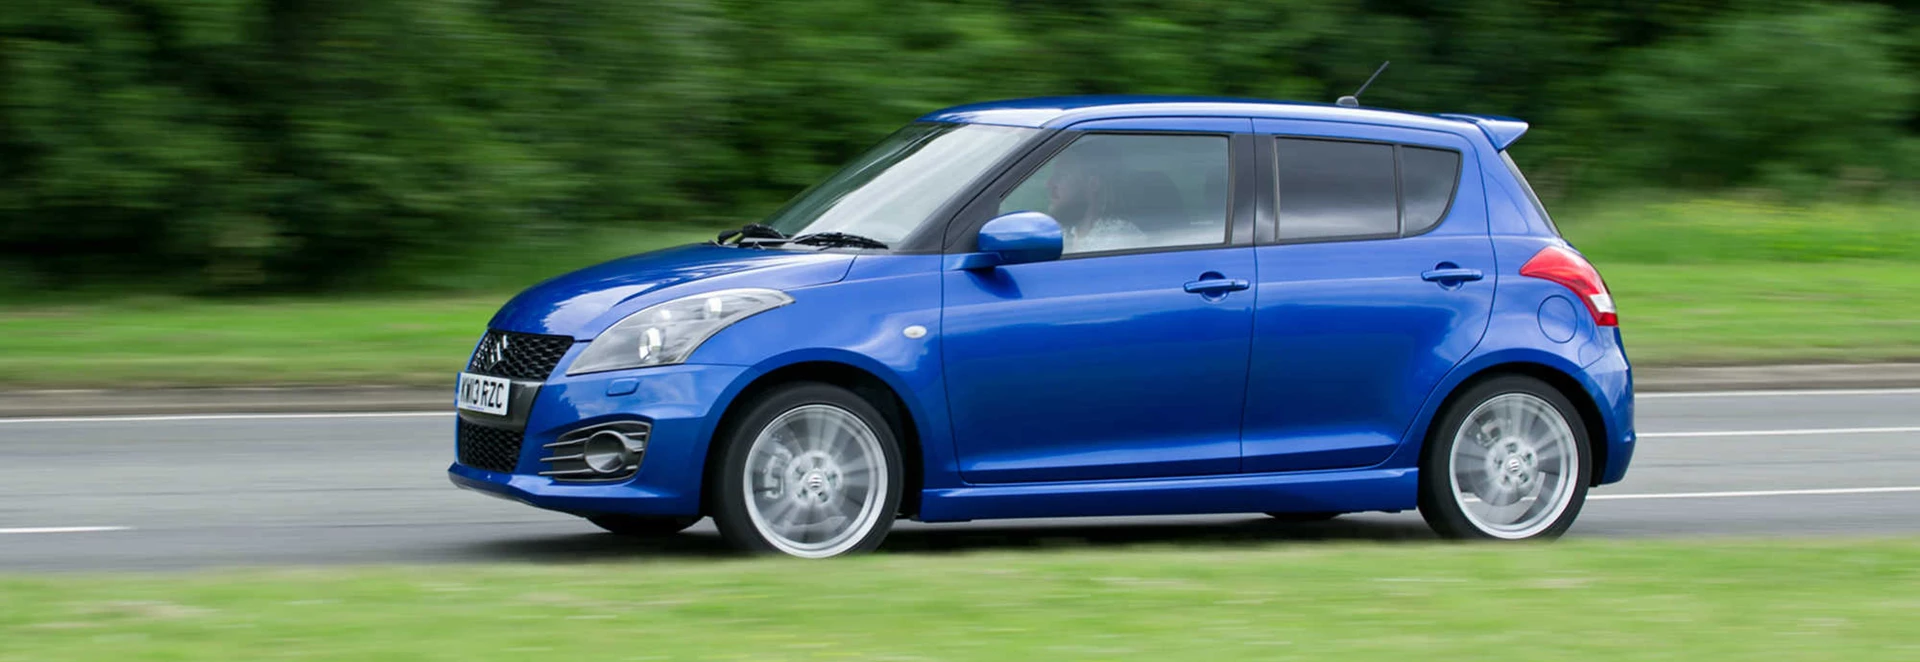 Suzuki Swift Sport hatchback review 